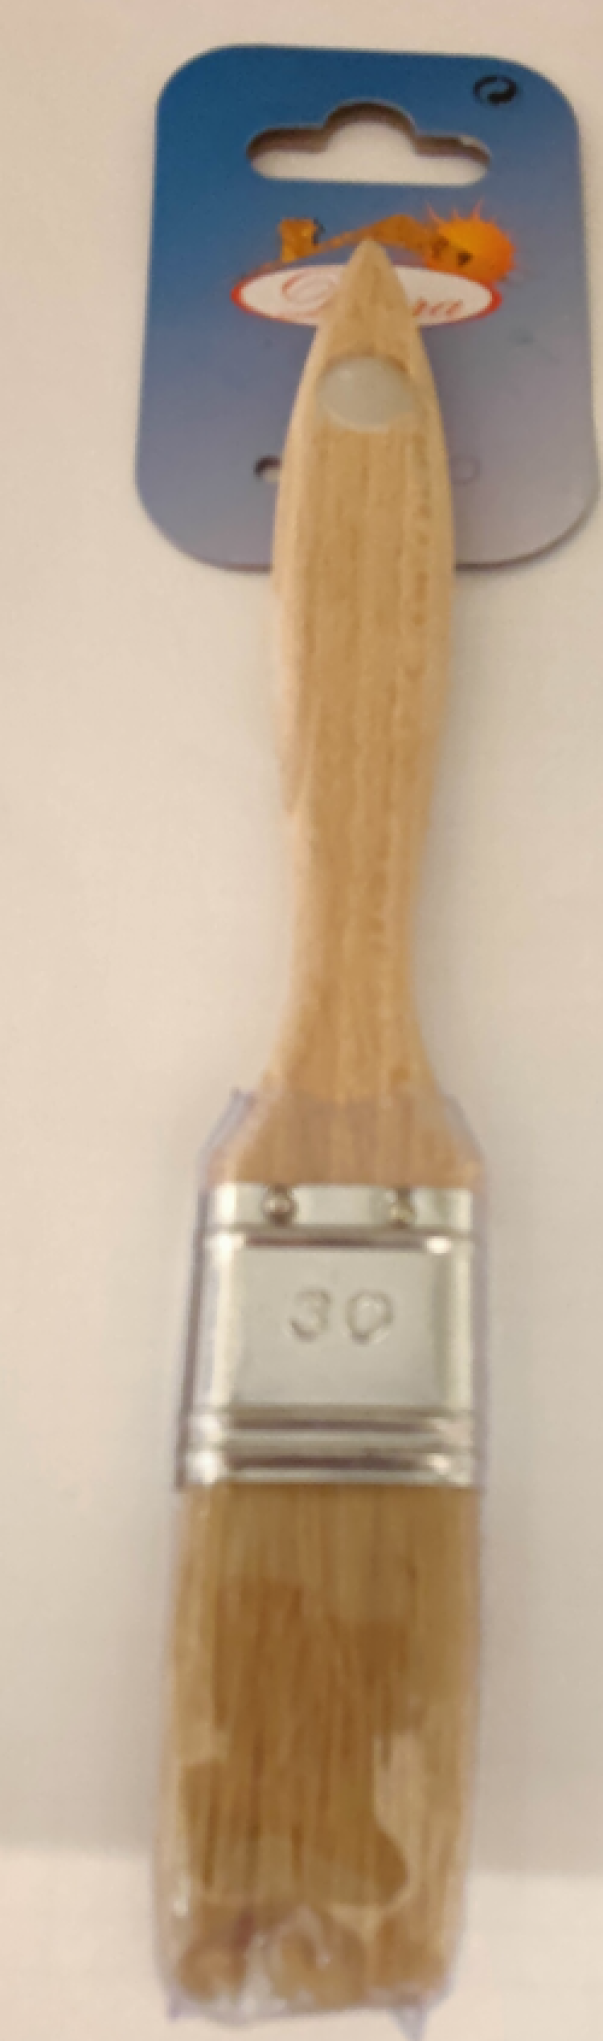 Pennello So.Di.Fer 30mm legno chiaro - 000115 01